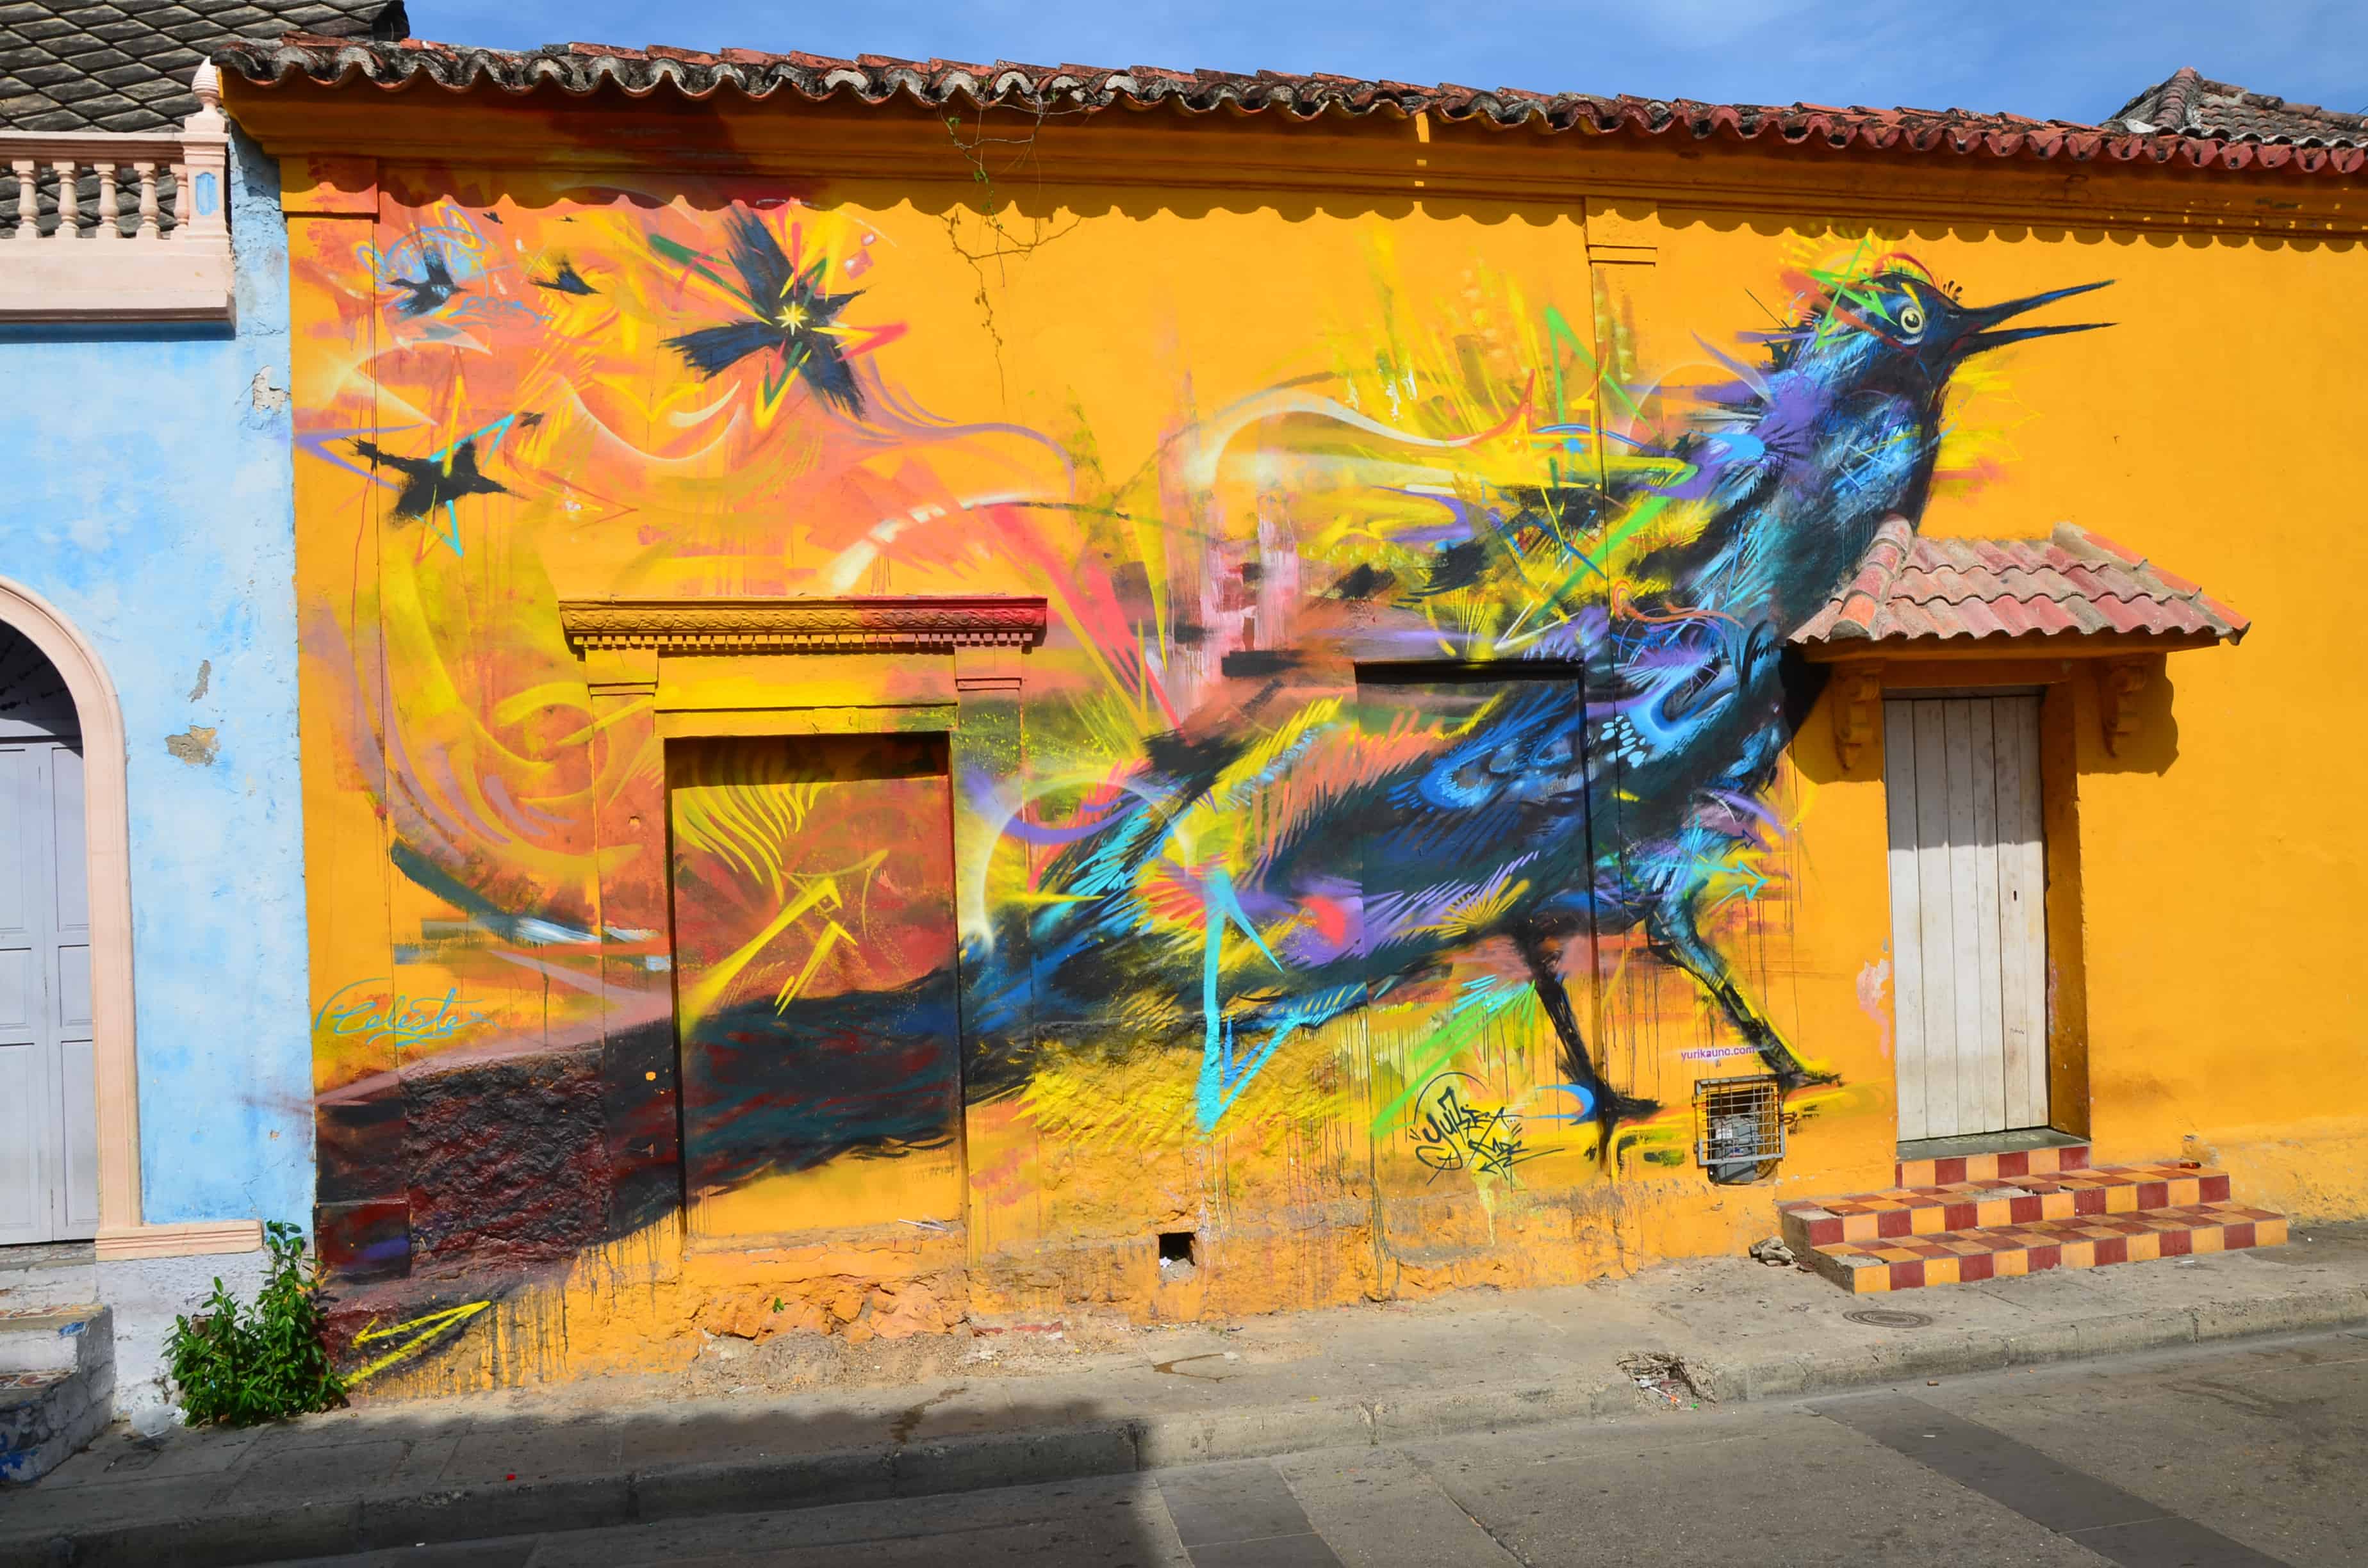 Mural of a colorful bird on Plaza de la Trinidad